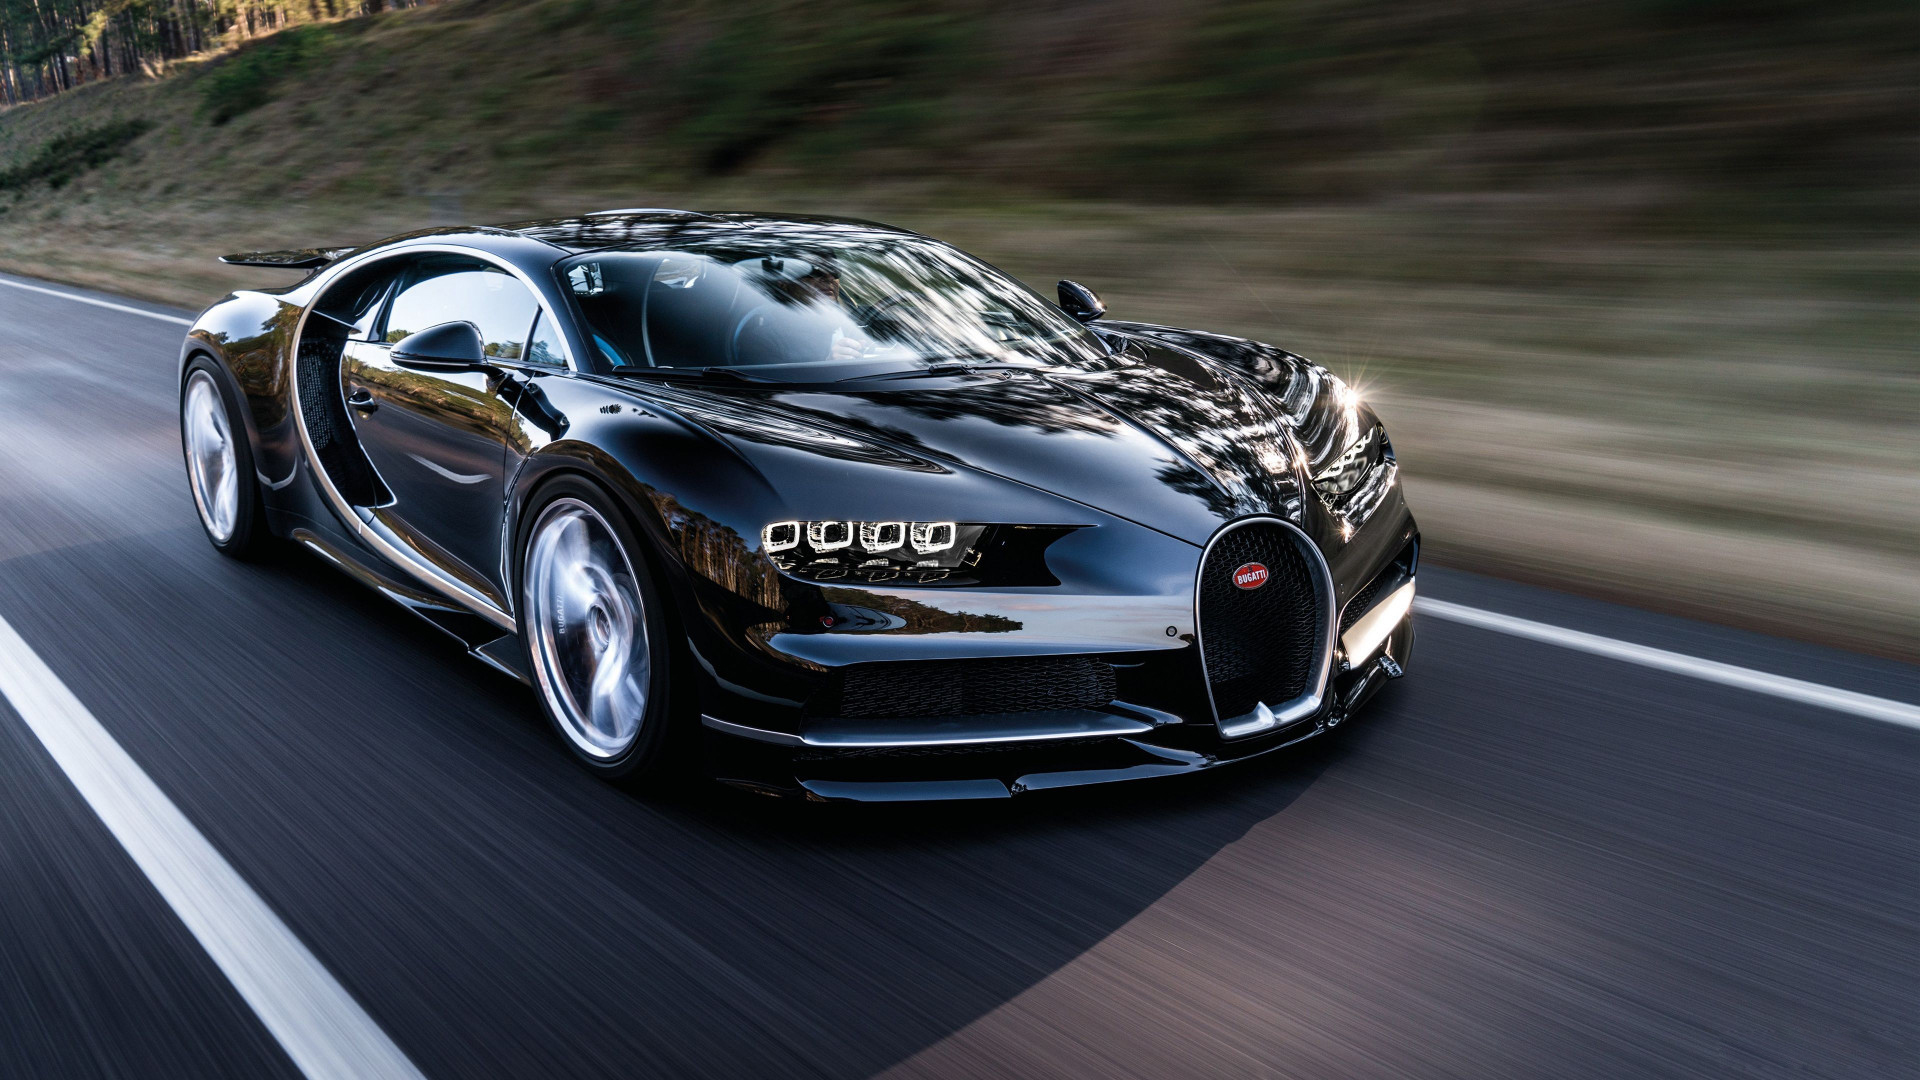 Siêu xe Bugatti là biểu tượng của tốc độ và đẳng cấp. Xem hình ảnh của chiếc siêu xe này sẽ khiến bạn cảm thấy như đang đứng trước một tác phẩm nghệ thuật hoàn hảo với những đường cong tinh tế và thiết kế đầy phong cách.